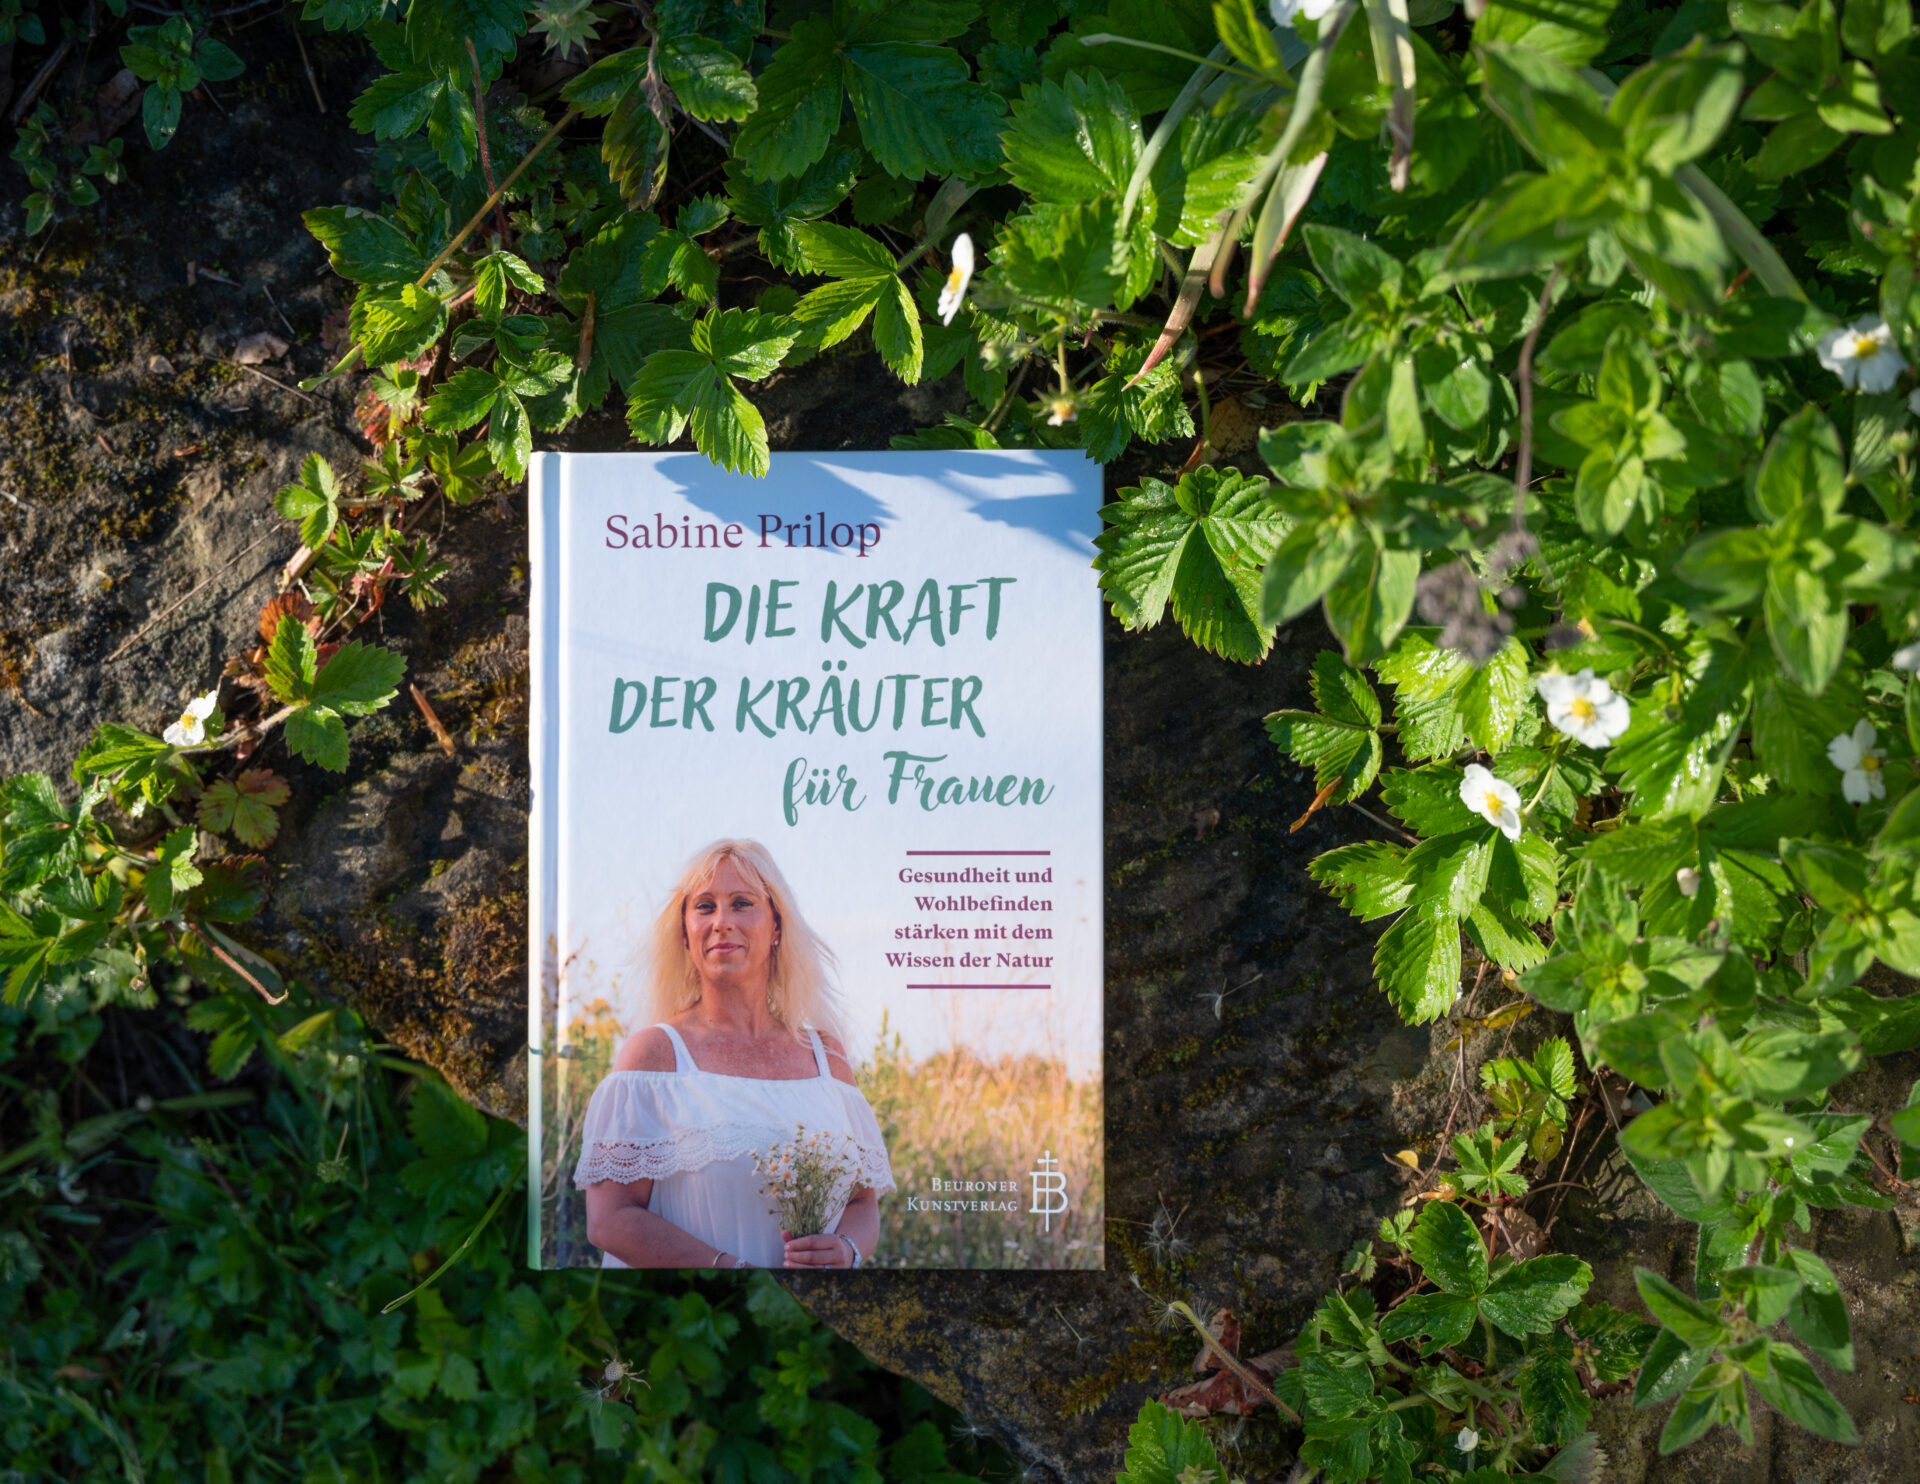 Buch über Kräuter für Frauen liegt im Kräutergarten